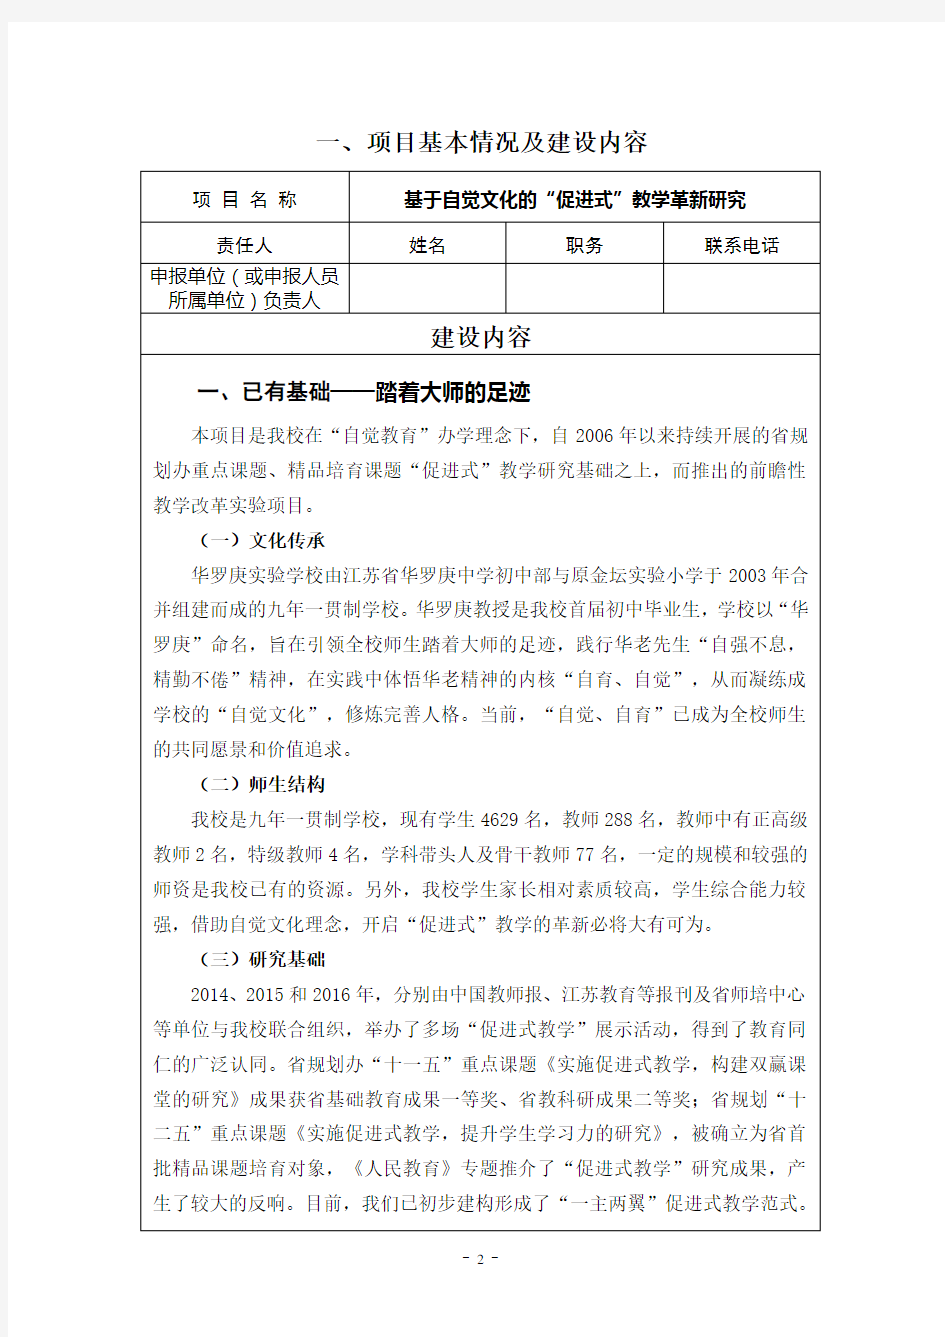 江苏省基础教育前瞻性教学改革实验项目申报表